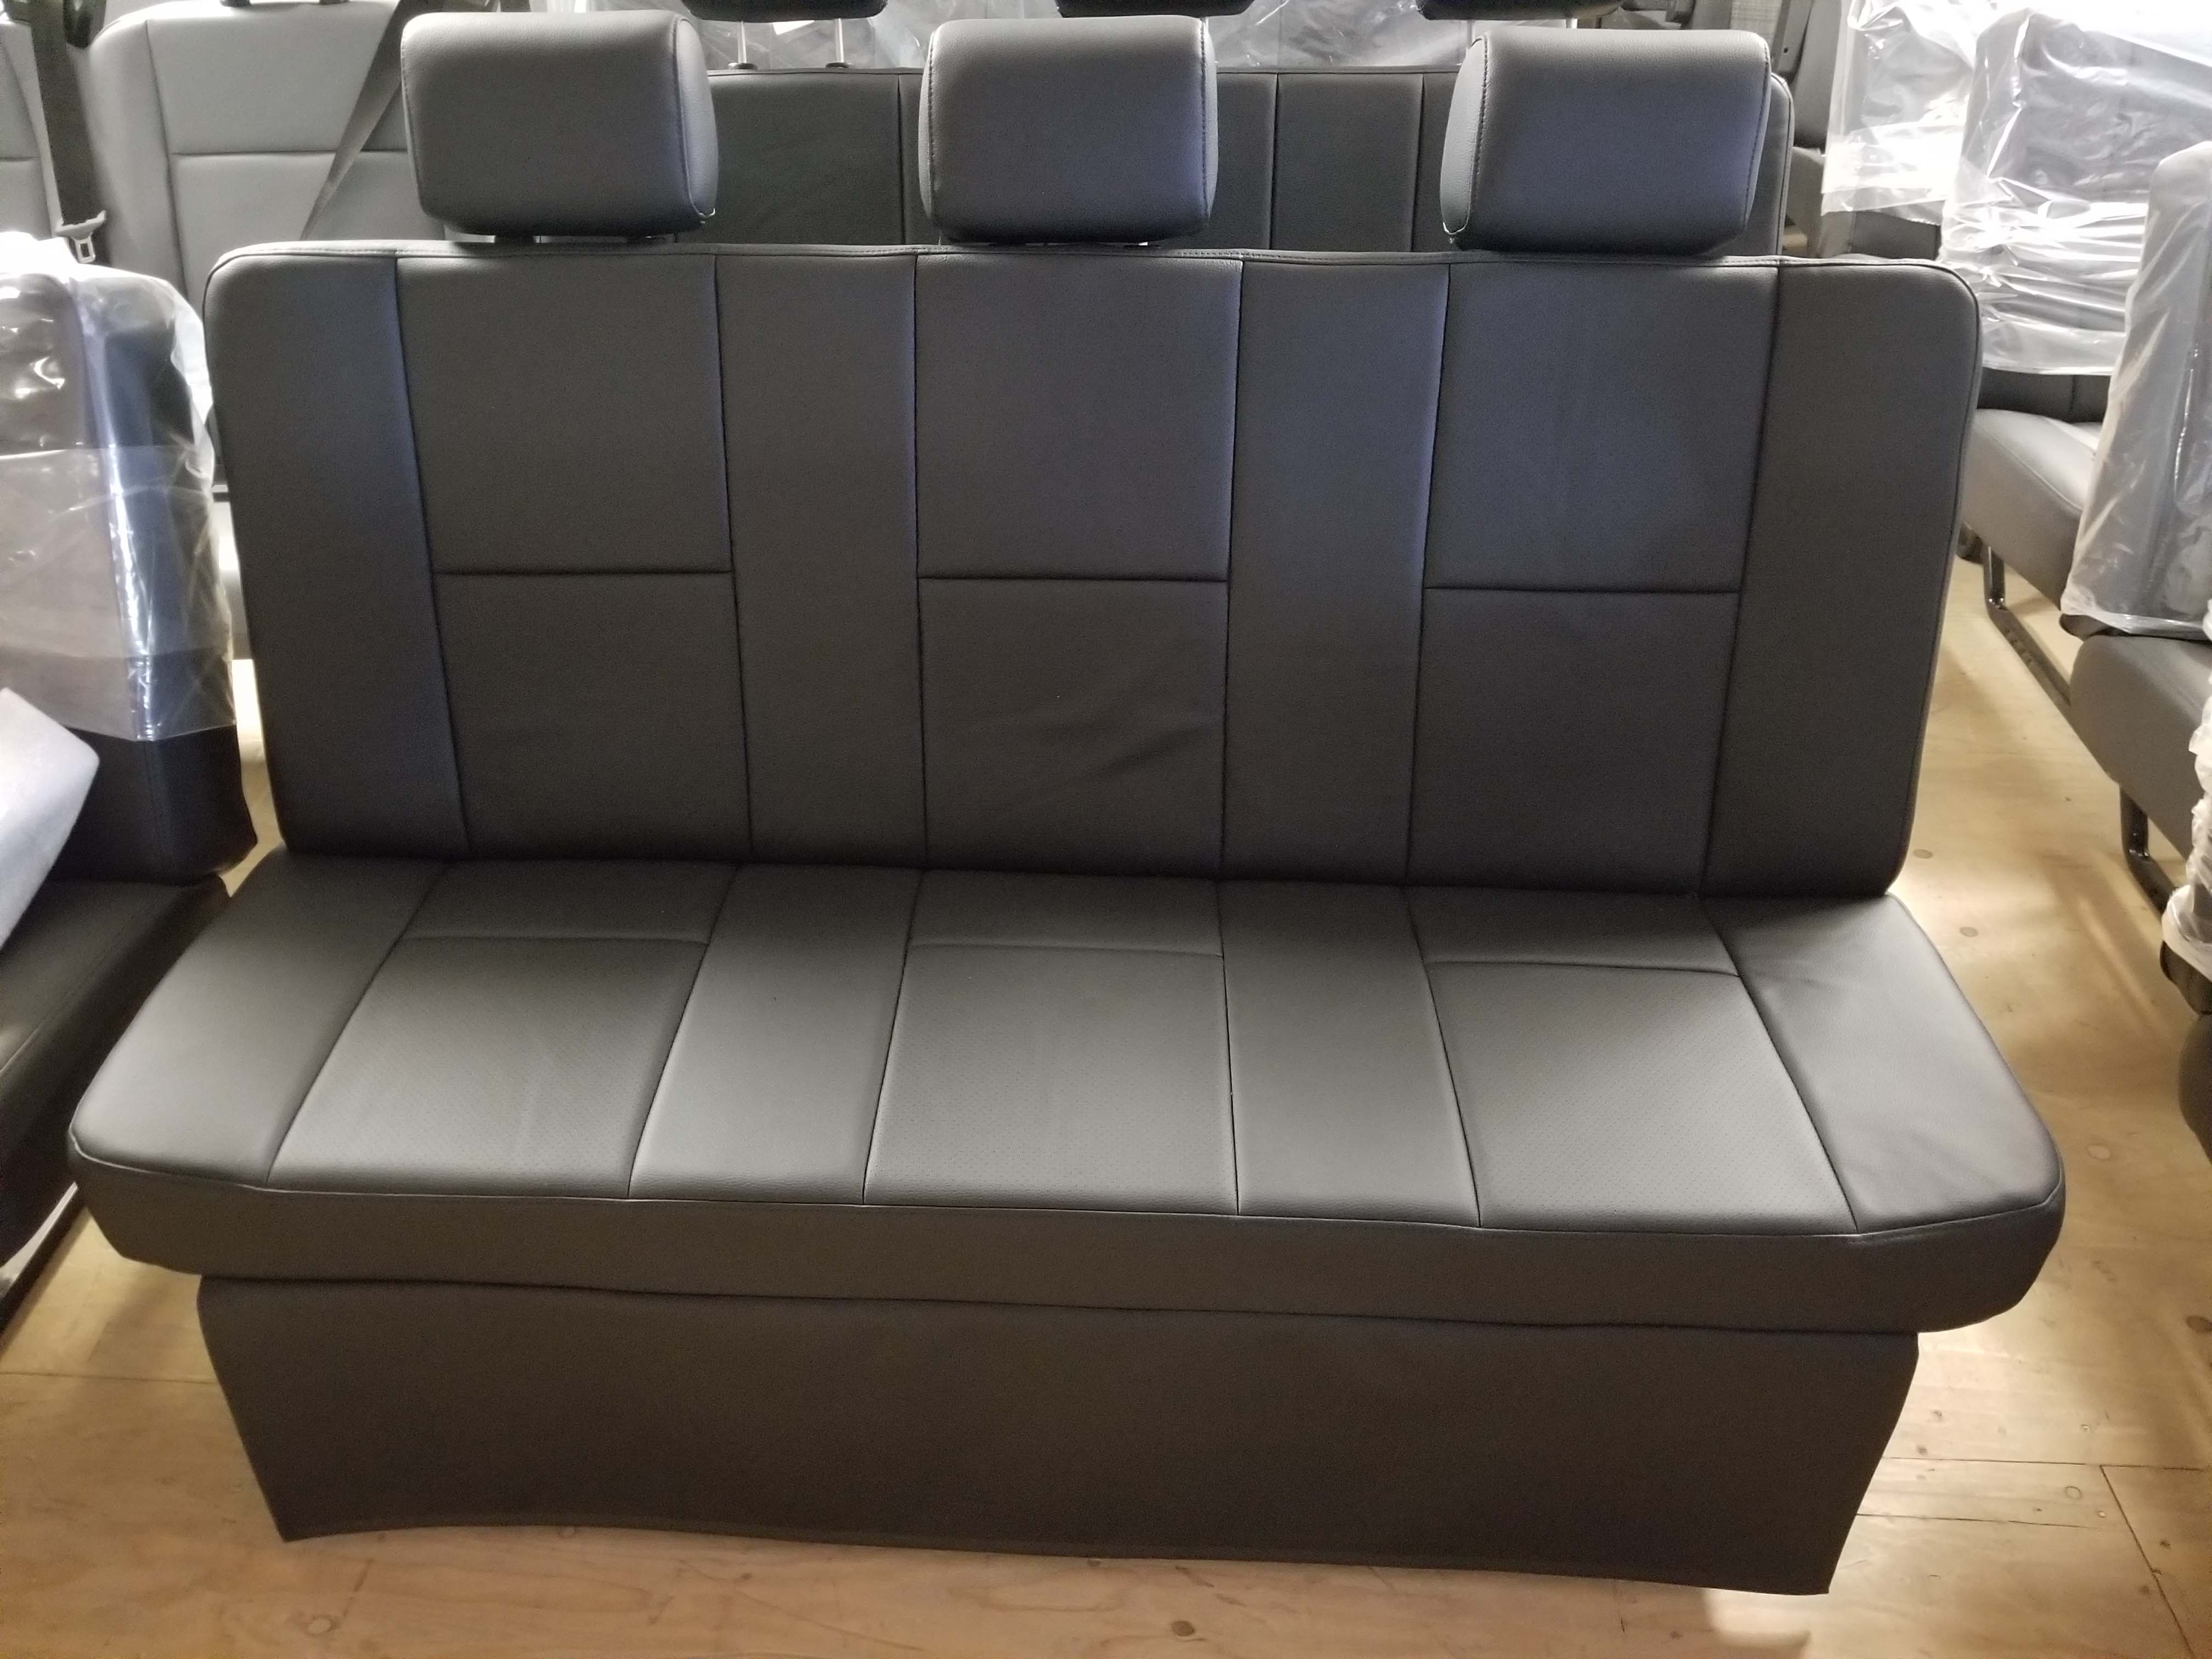 Ghế sofa giường cho xe van: Sự tiện nghi của xe van sẽ được nâng cao hơn với ghế sofa giường đa năng. Không chỉ là một chỗ ngồi thoải mái, ghế sofa này còn có thể biến thành một chiếc giường êm ái khi bạn muốn nghỉ ngơi trong hành trình. Hãy dành thời gian để chiêm ngưỡng hình ảnh của ghế sofa giường độc đáo này.